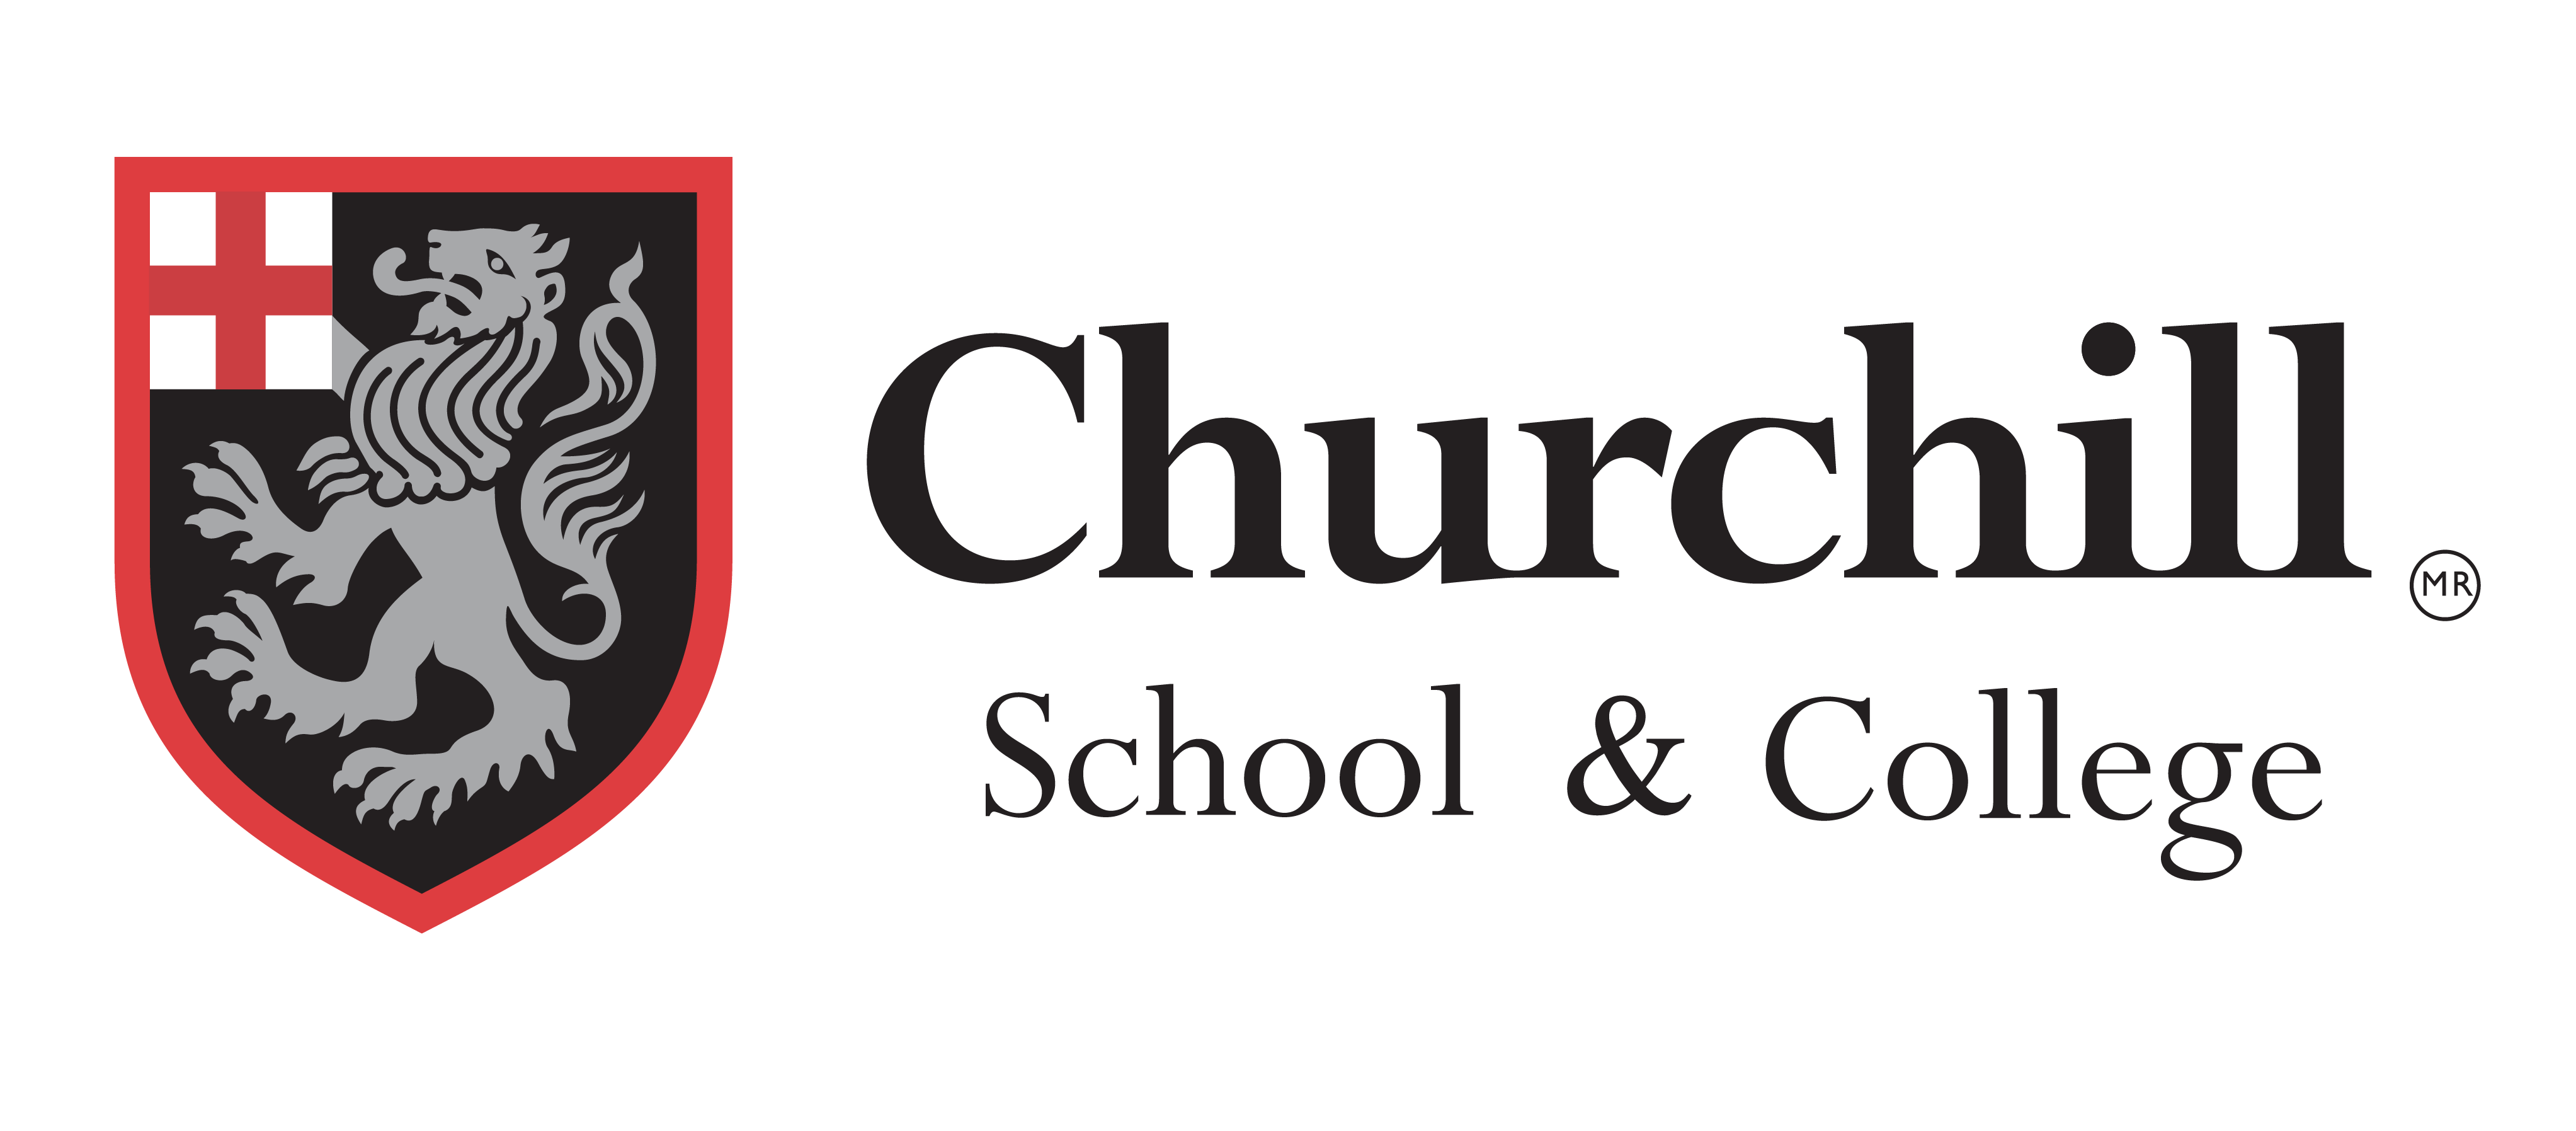 The Churchill School & College